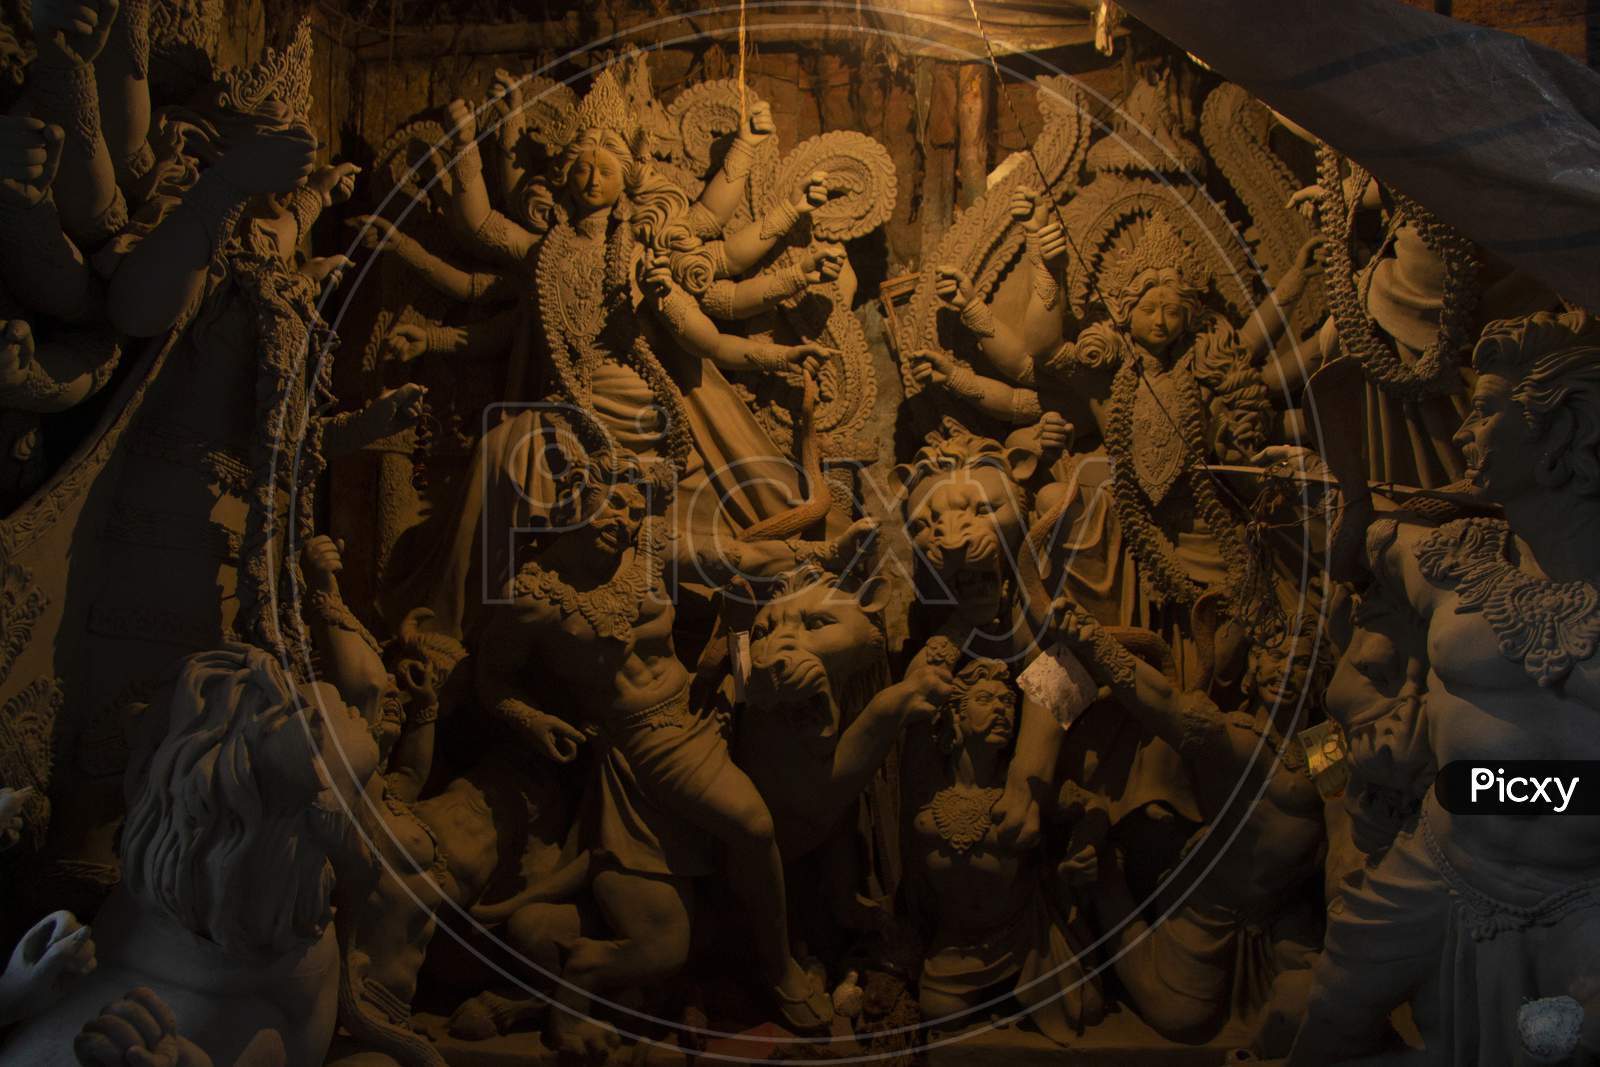 Making of Durga idols